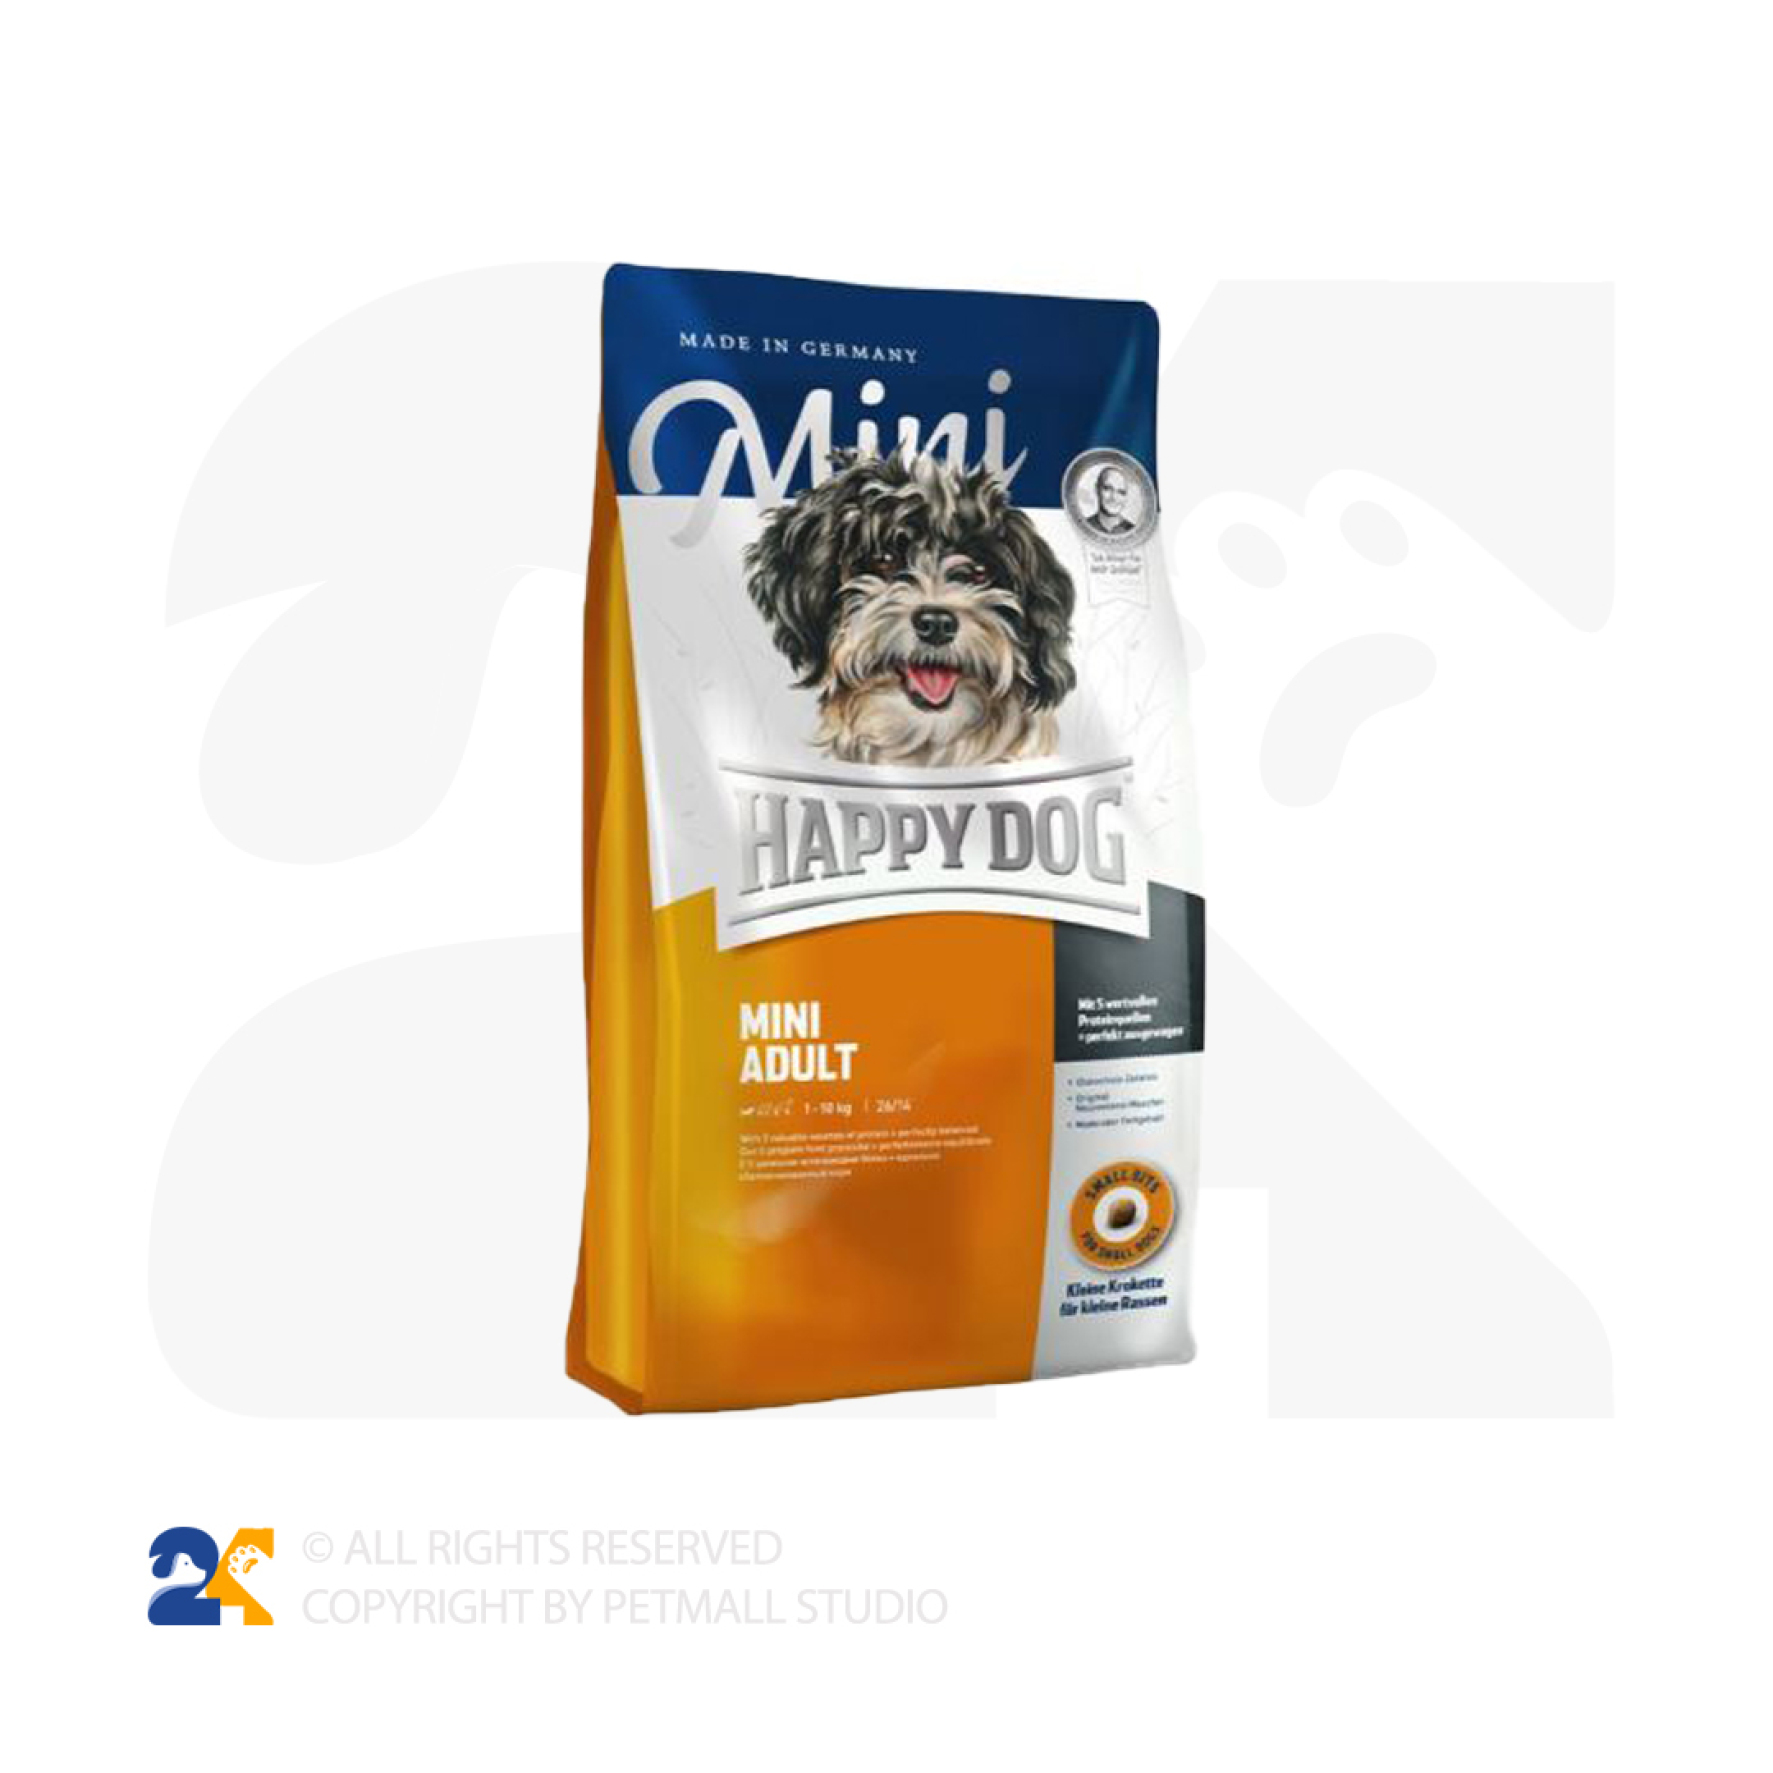  غذای خشک سگ هپی داگ مدل Mini Adult 